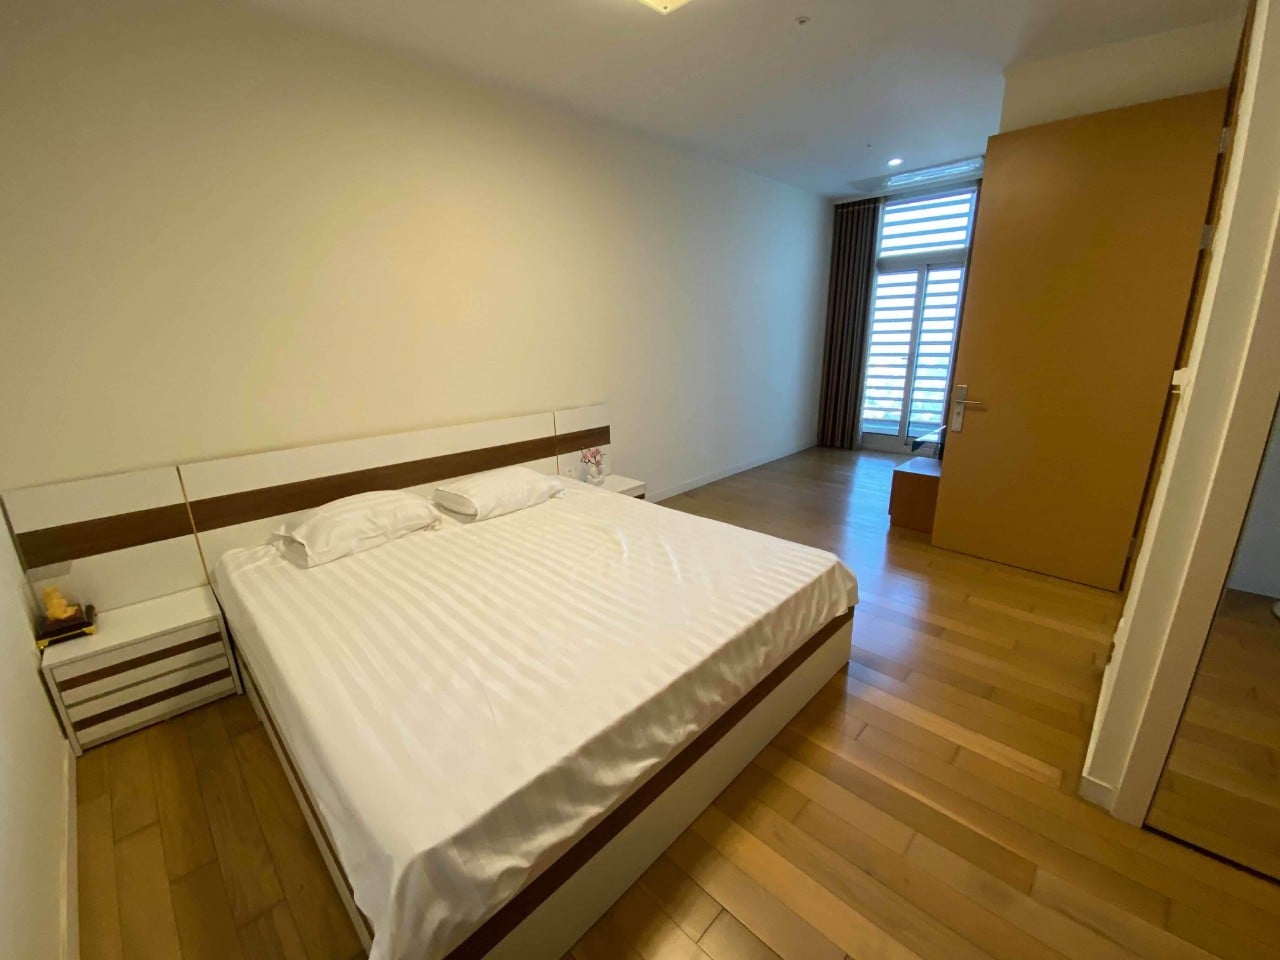 Cho thuê căn hộ 3 phòng ngủ chung cư Keangnam full nội thất cao cấp, vào ở được ngay (ảnh thật) 999150